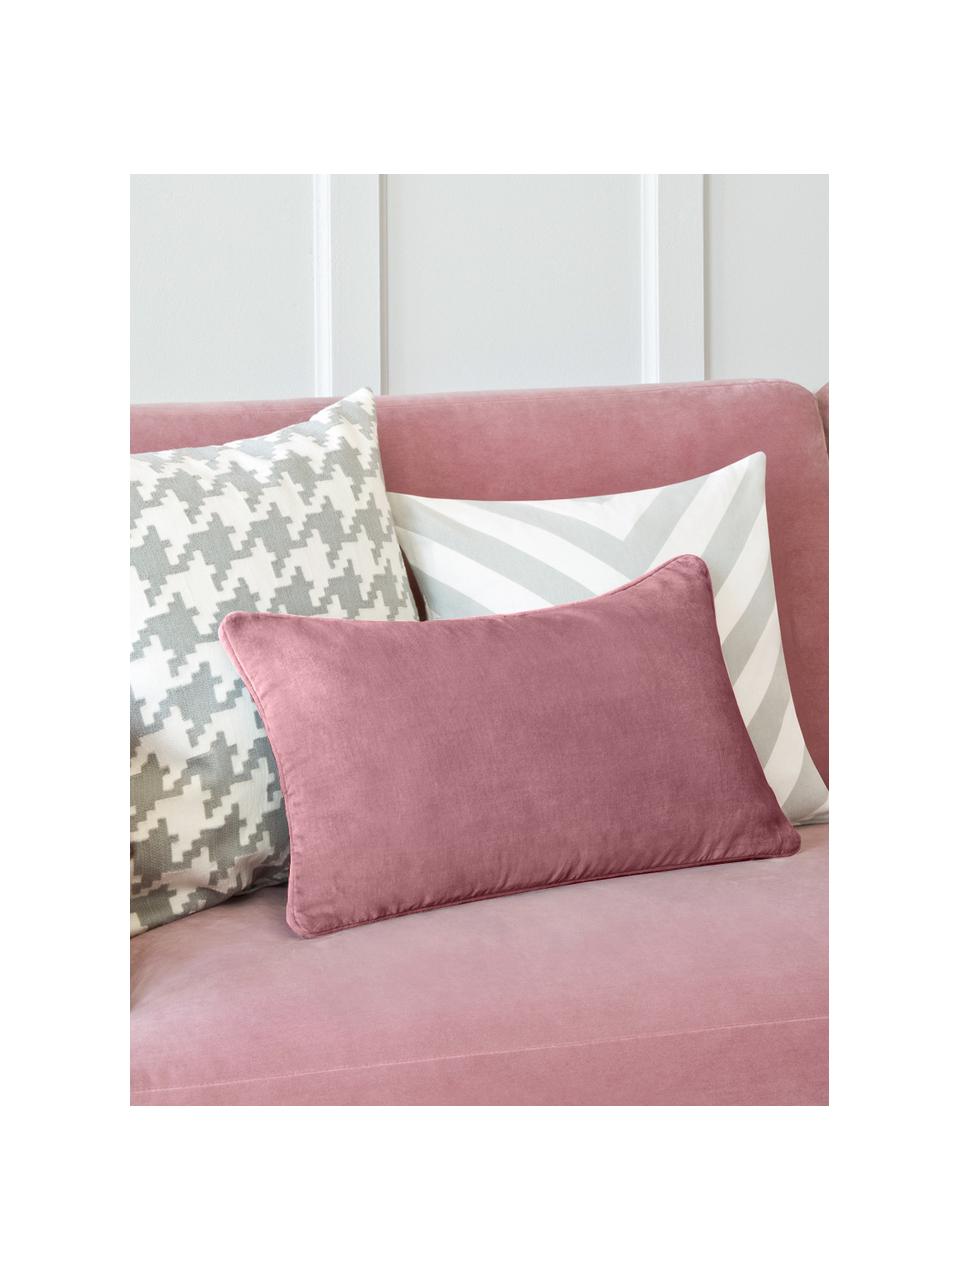 Poszewka na poduszkę z aksamitu Dana, 100% aksamit bawełniany, Brudny różowy, S 30 x D 50 cm